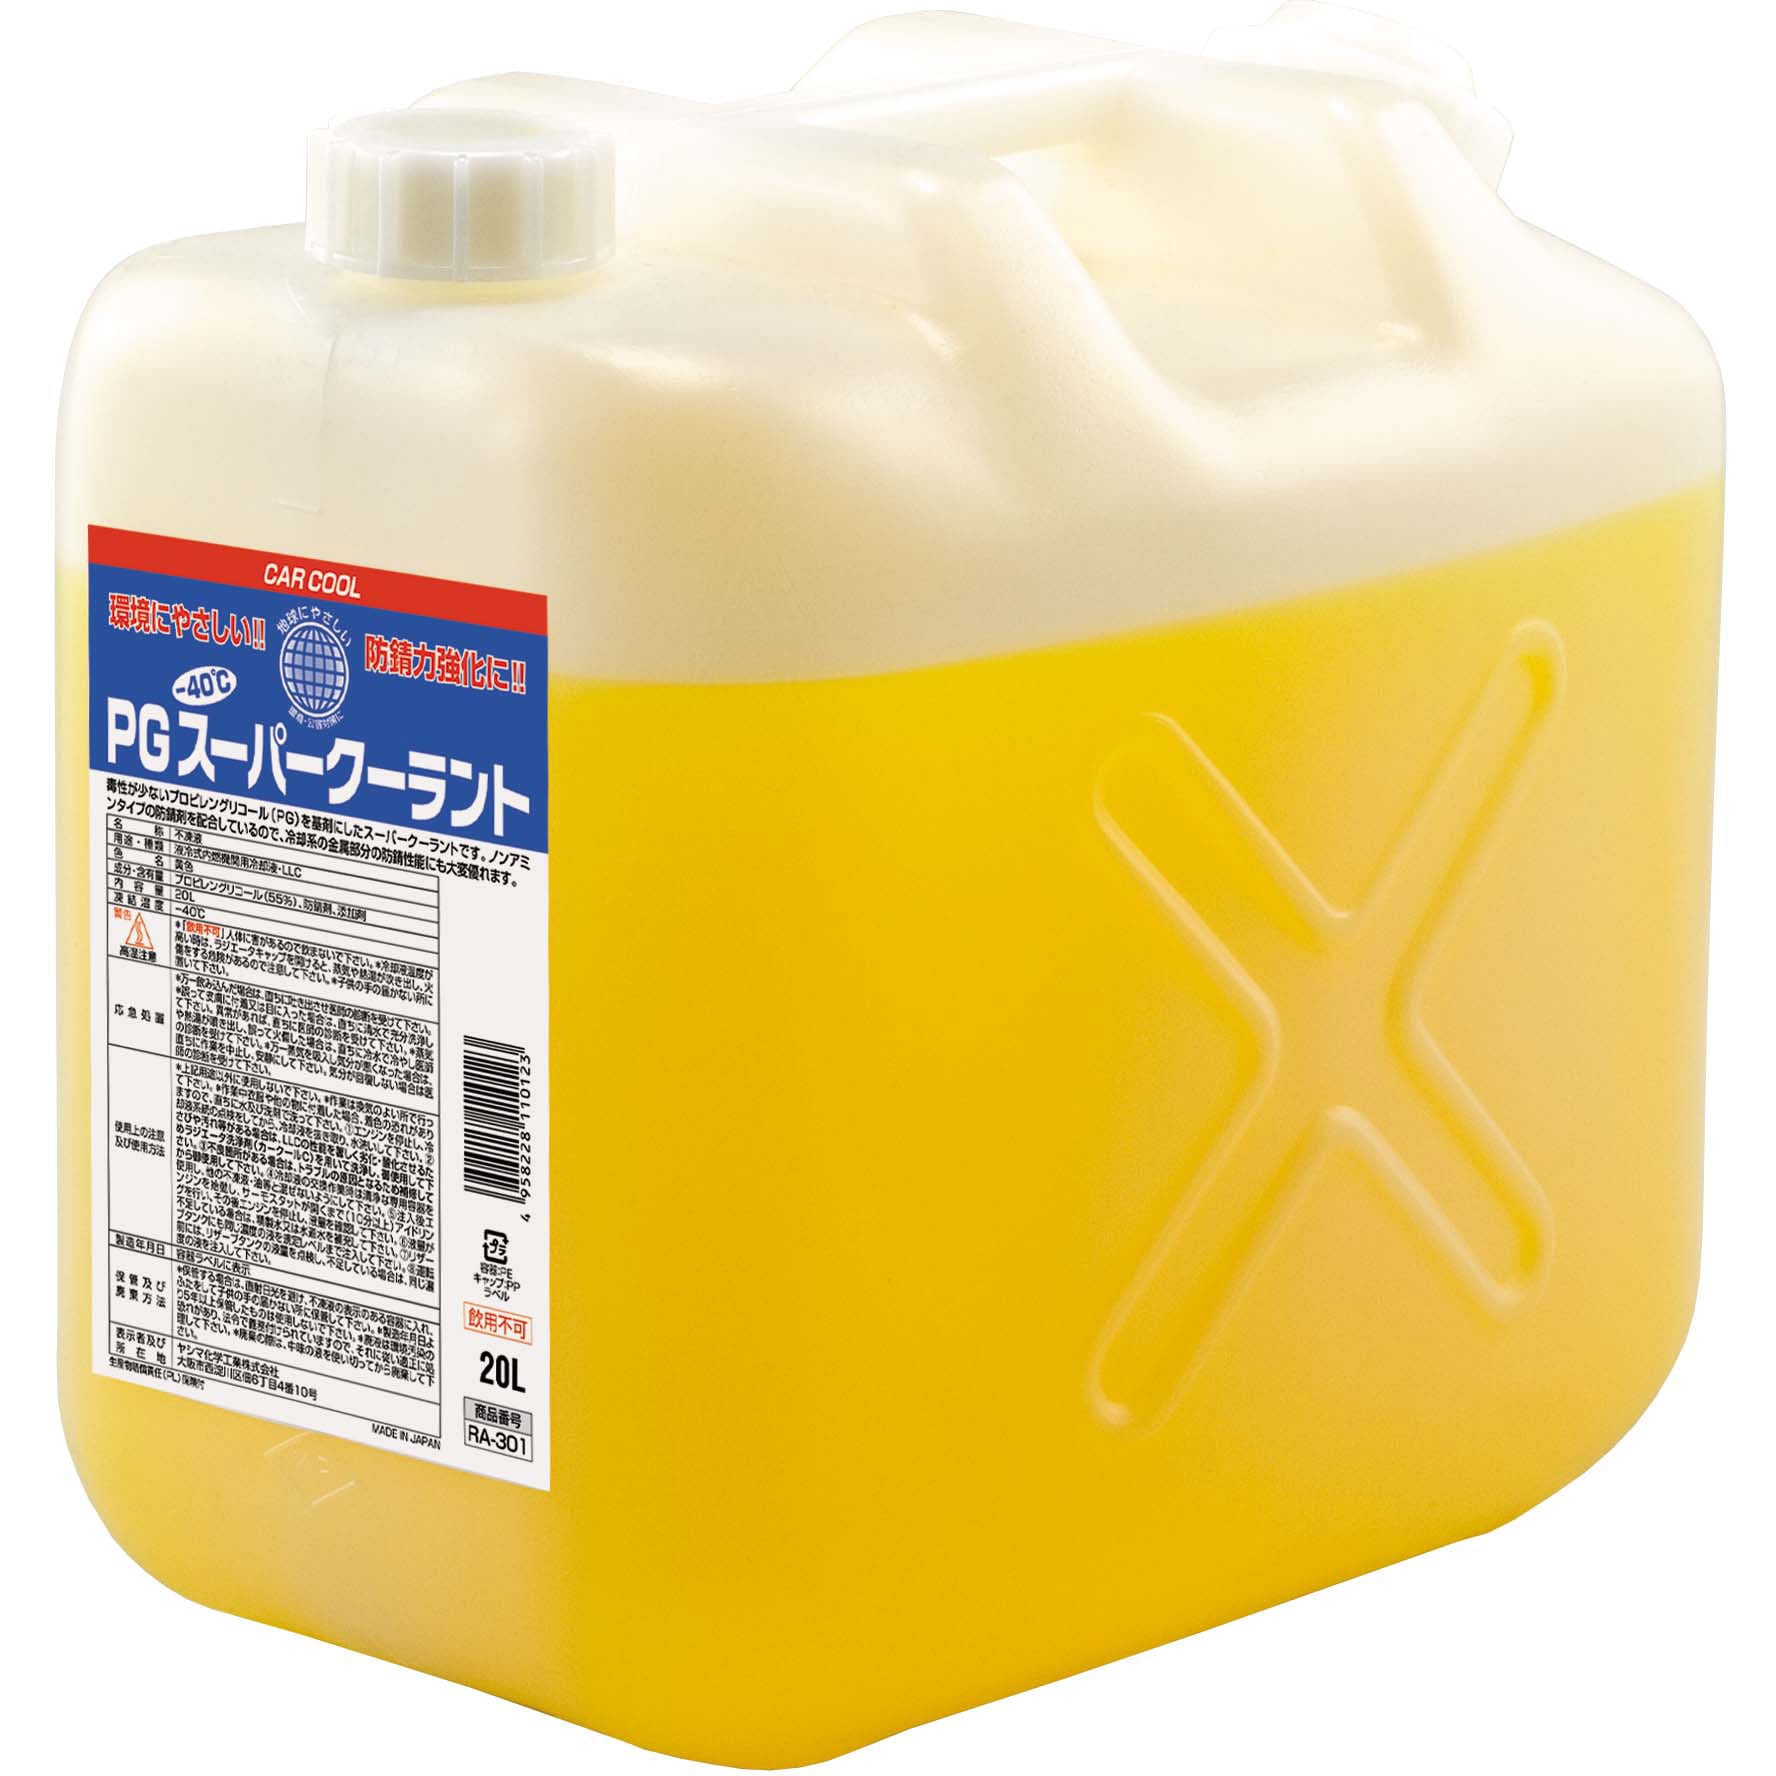 RA-301 CAR COOL PGスーパークーラント 1缶(20L) ヤシマ化学 【通販サイトMonotaRO】